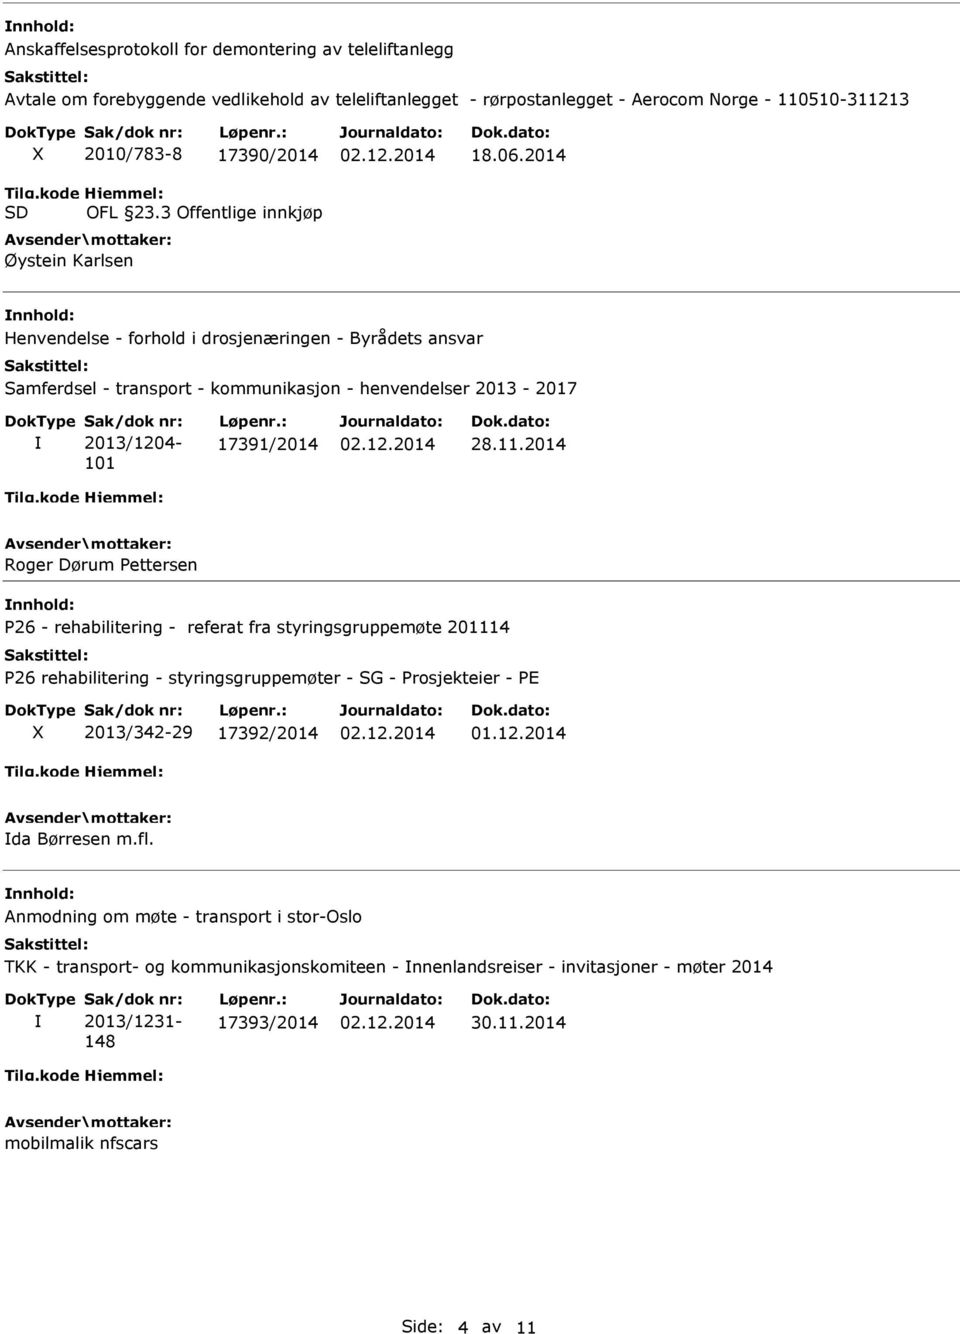 2014 Henvendelse - forhold i drosjenæringen - Byrådets ansvar Samferdsel - transport - kommunikasjon - henvendelser 2013-2017 2013/1204-101 17391/2014 28.11.